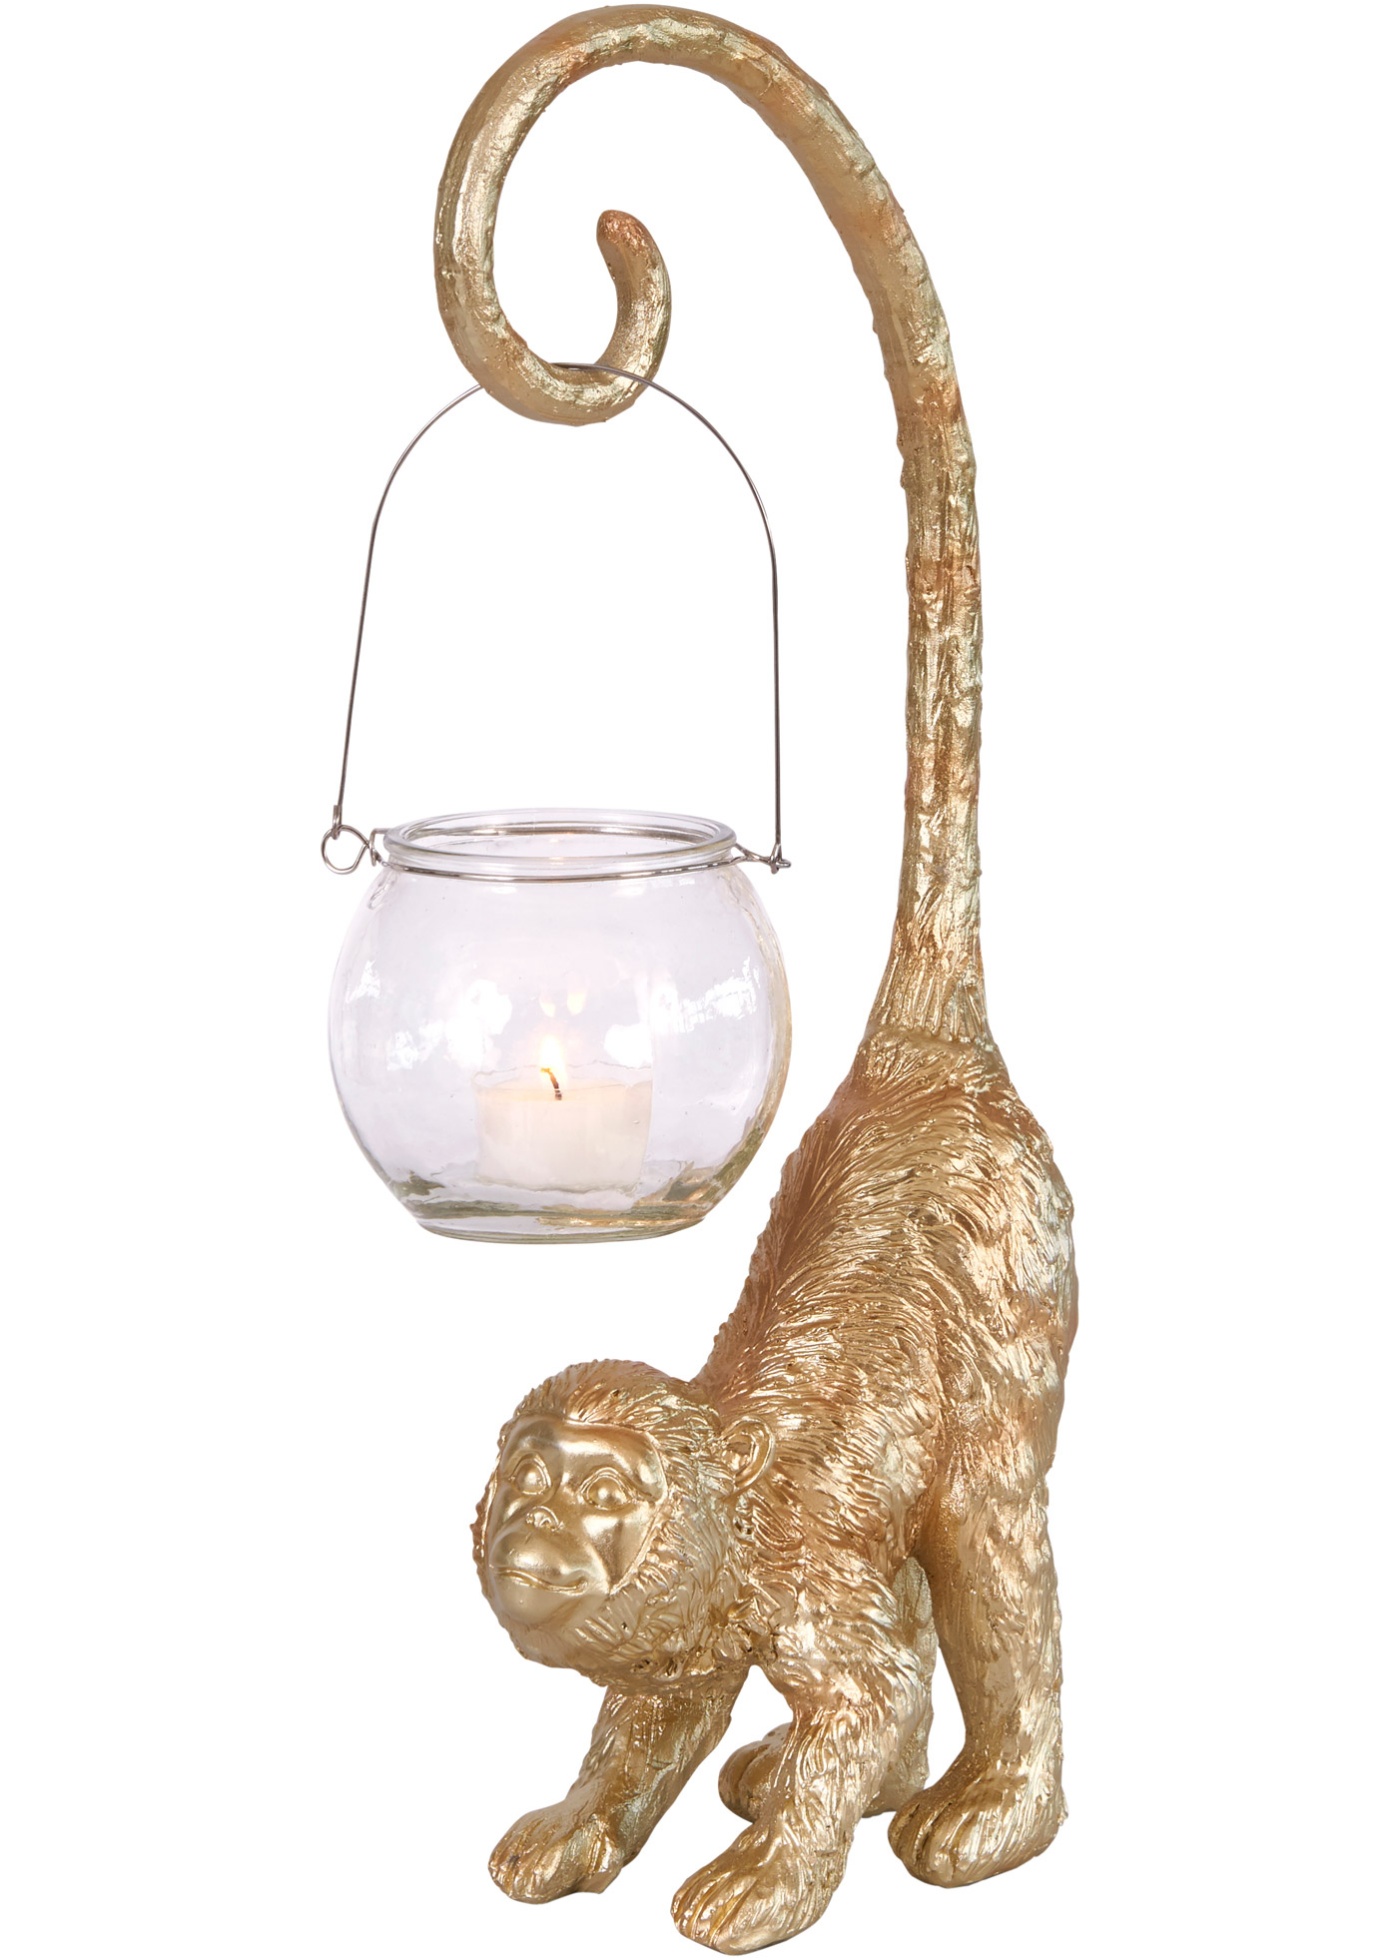 Witziger Kerzenhalter im Affen-Design mit hängendem Teelicht (91936781) in goldfarben